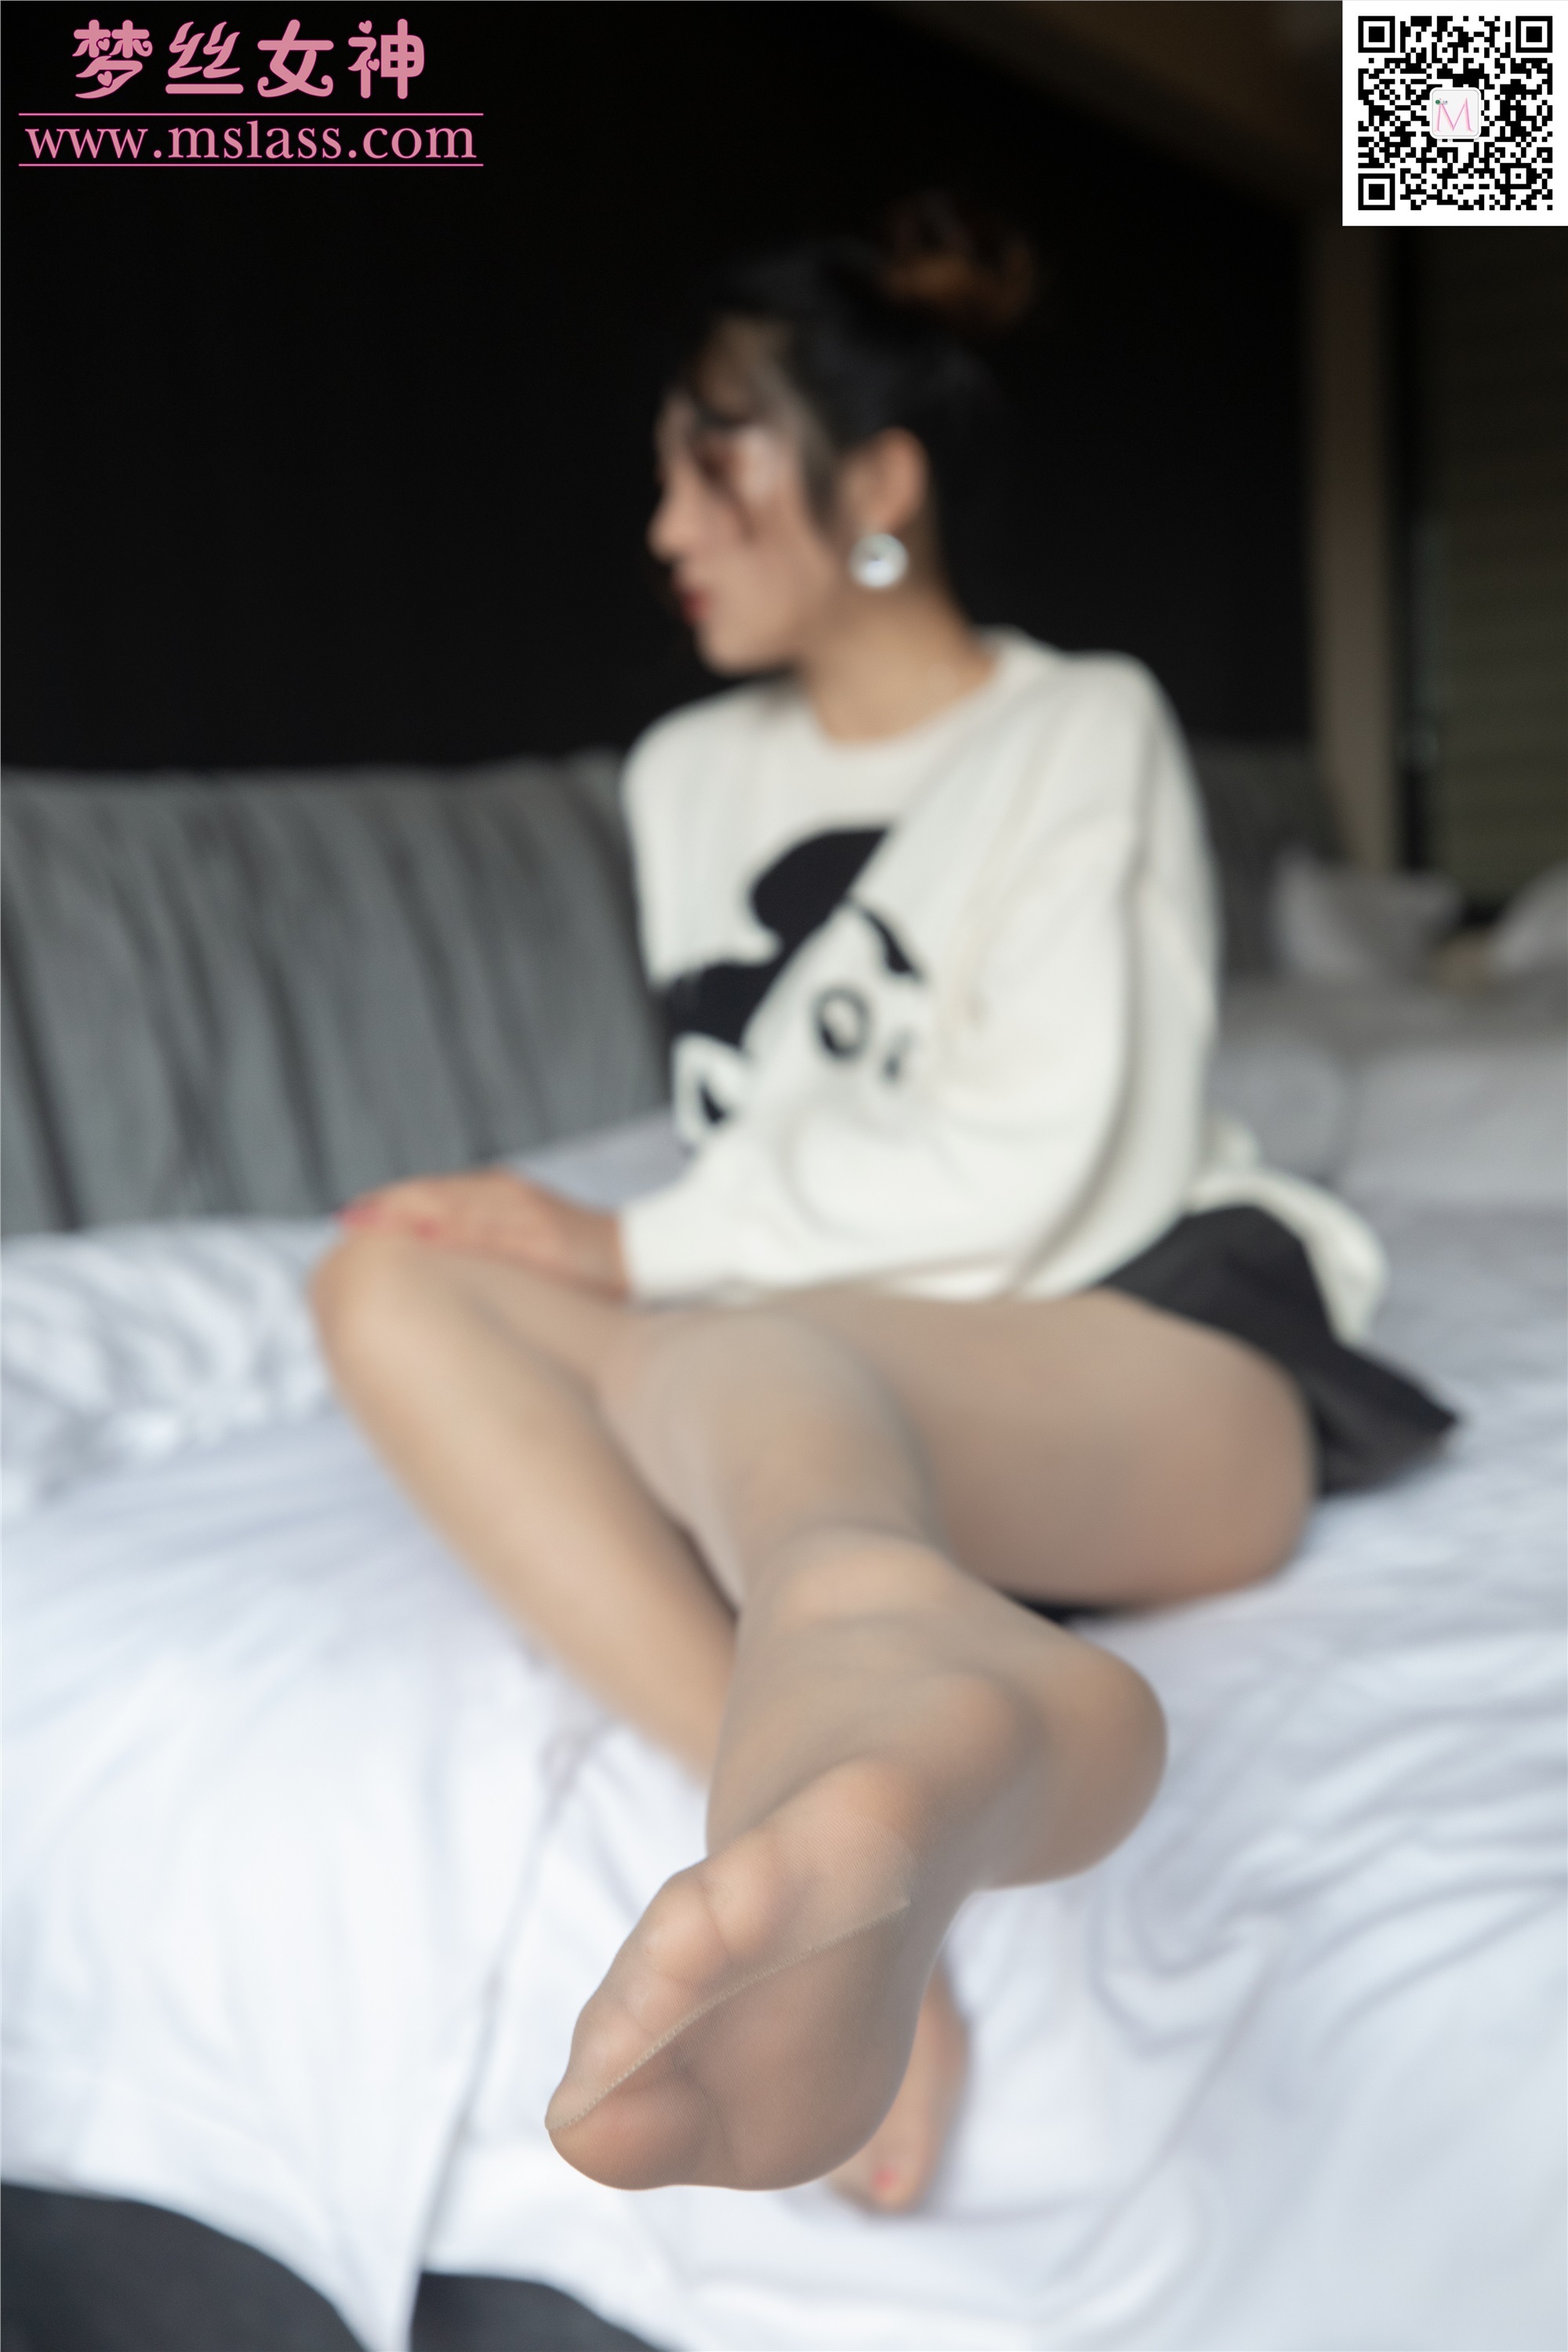 Mslass dream silk goddess November 12, 2019 vol.068 silk stockings under the white sweater in rainy morning